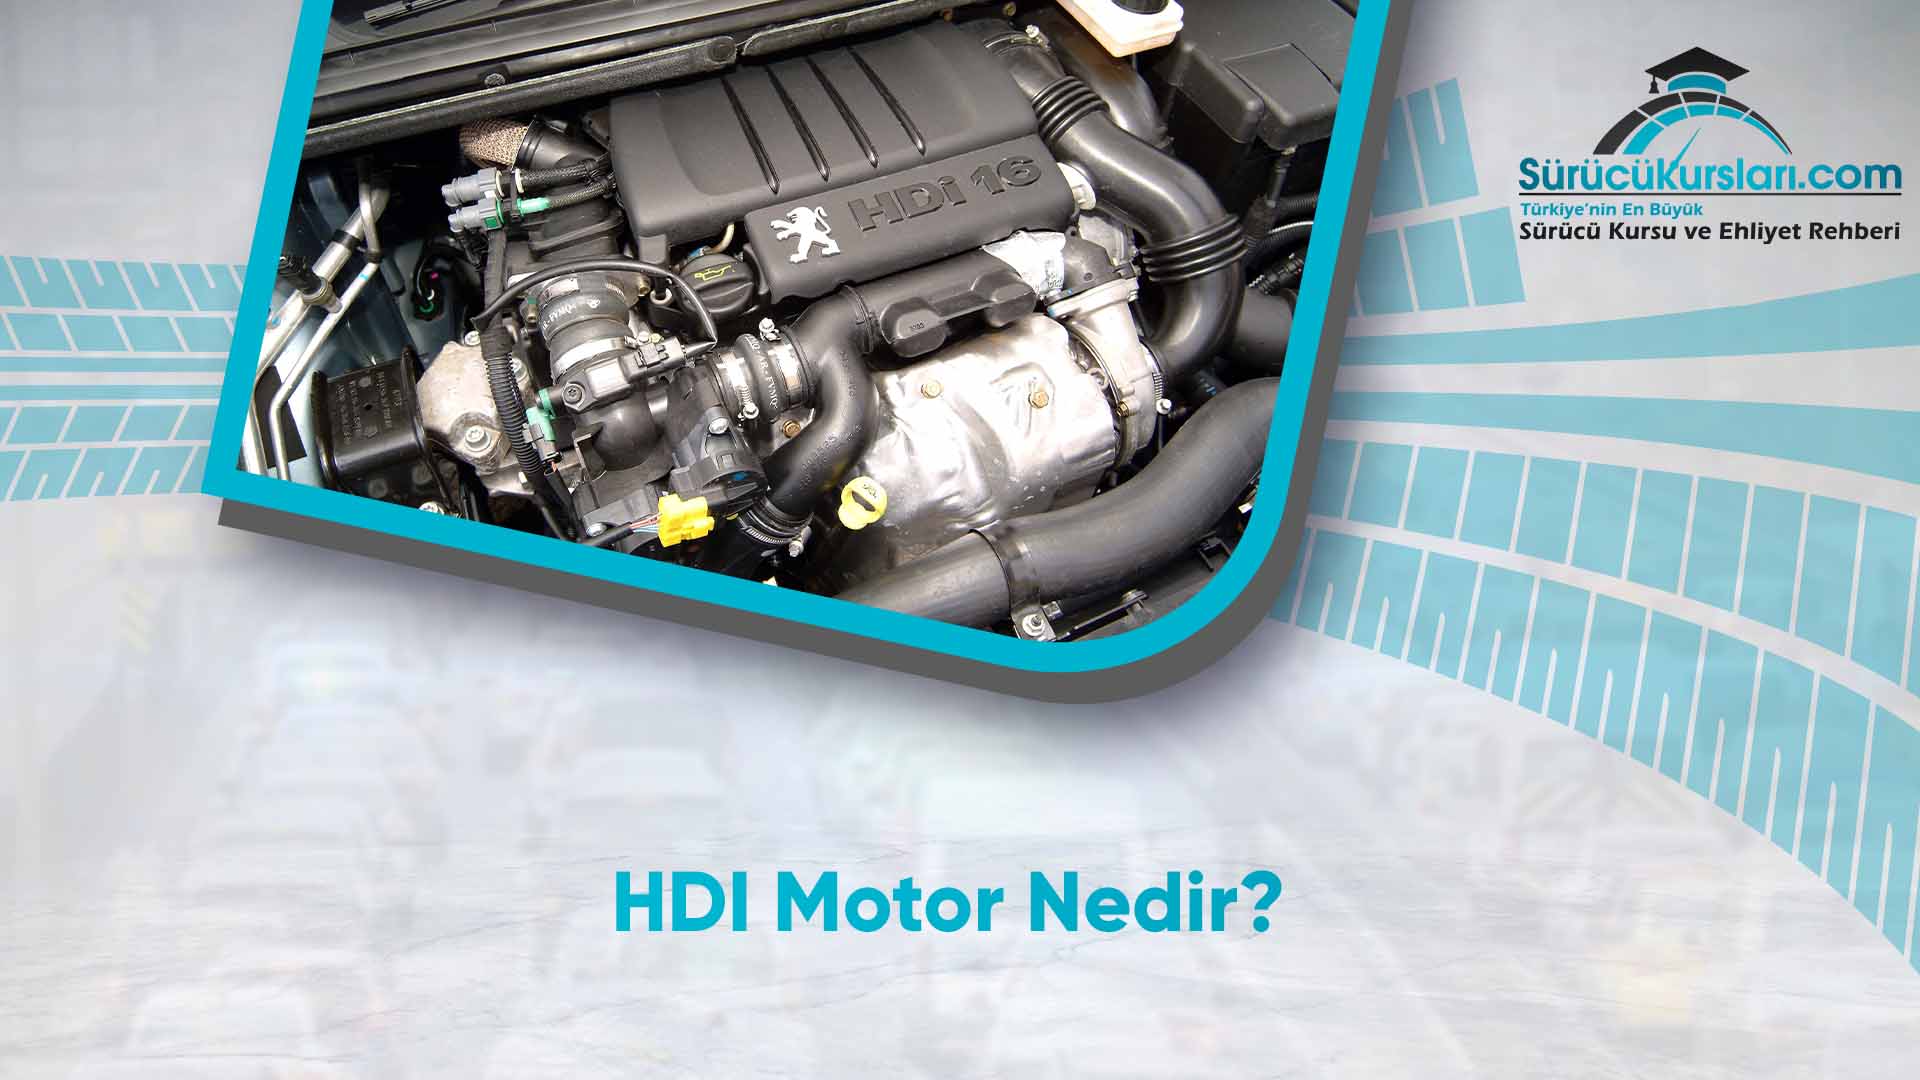 HDI Motor Nedi